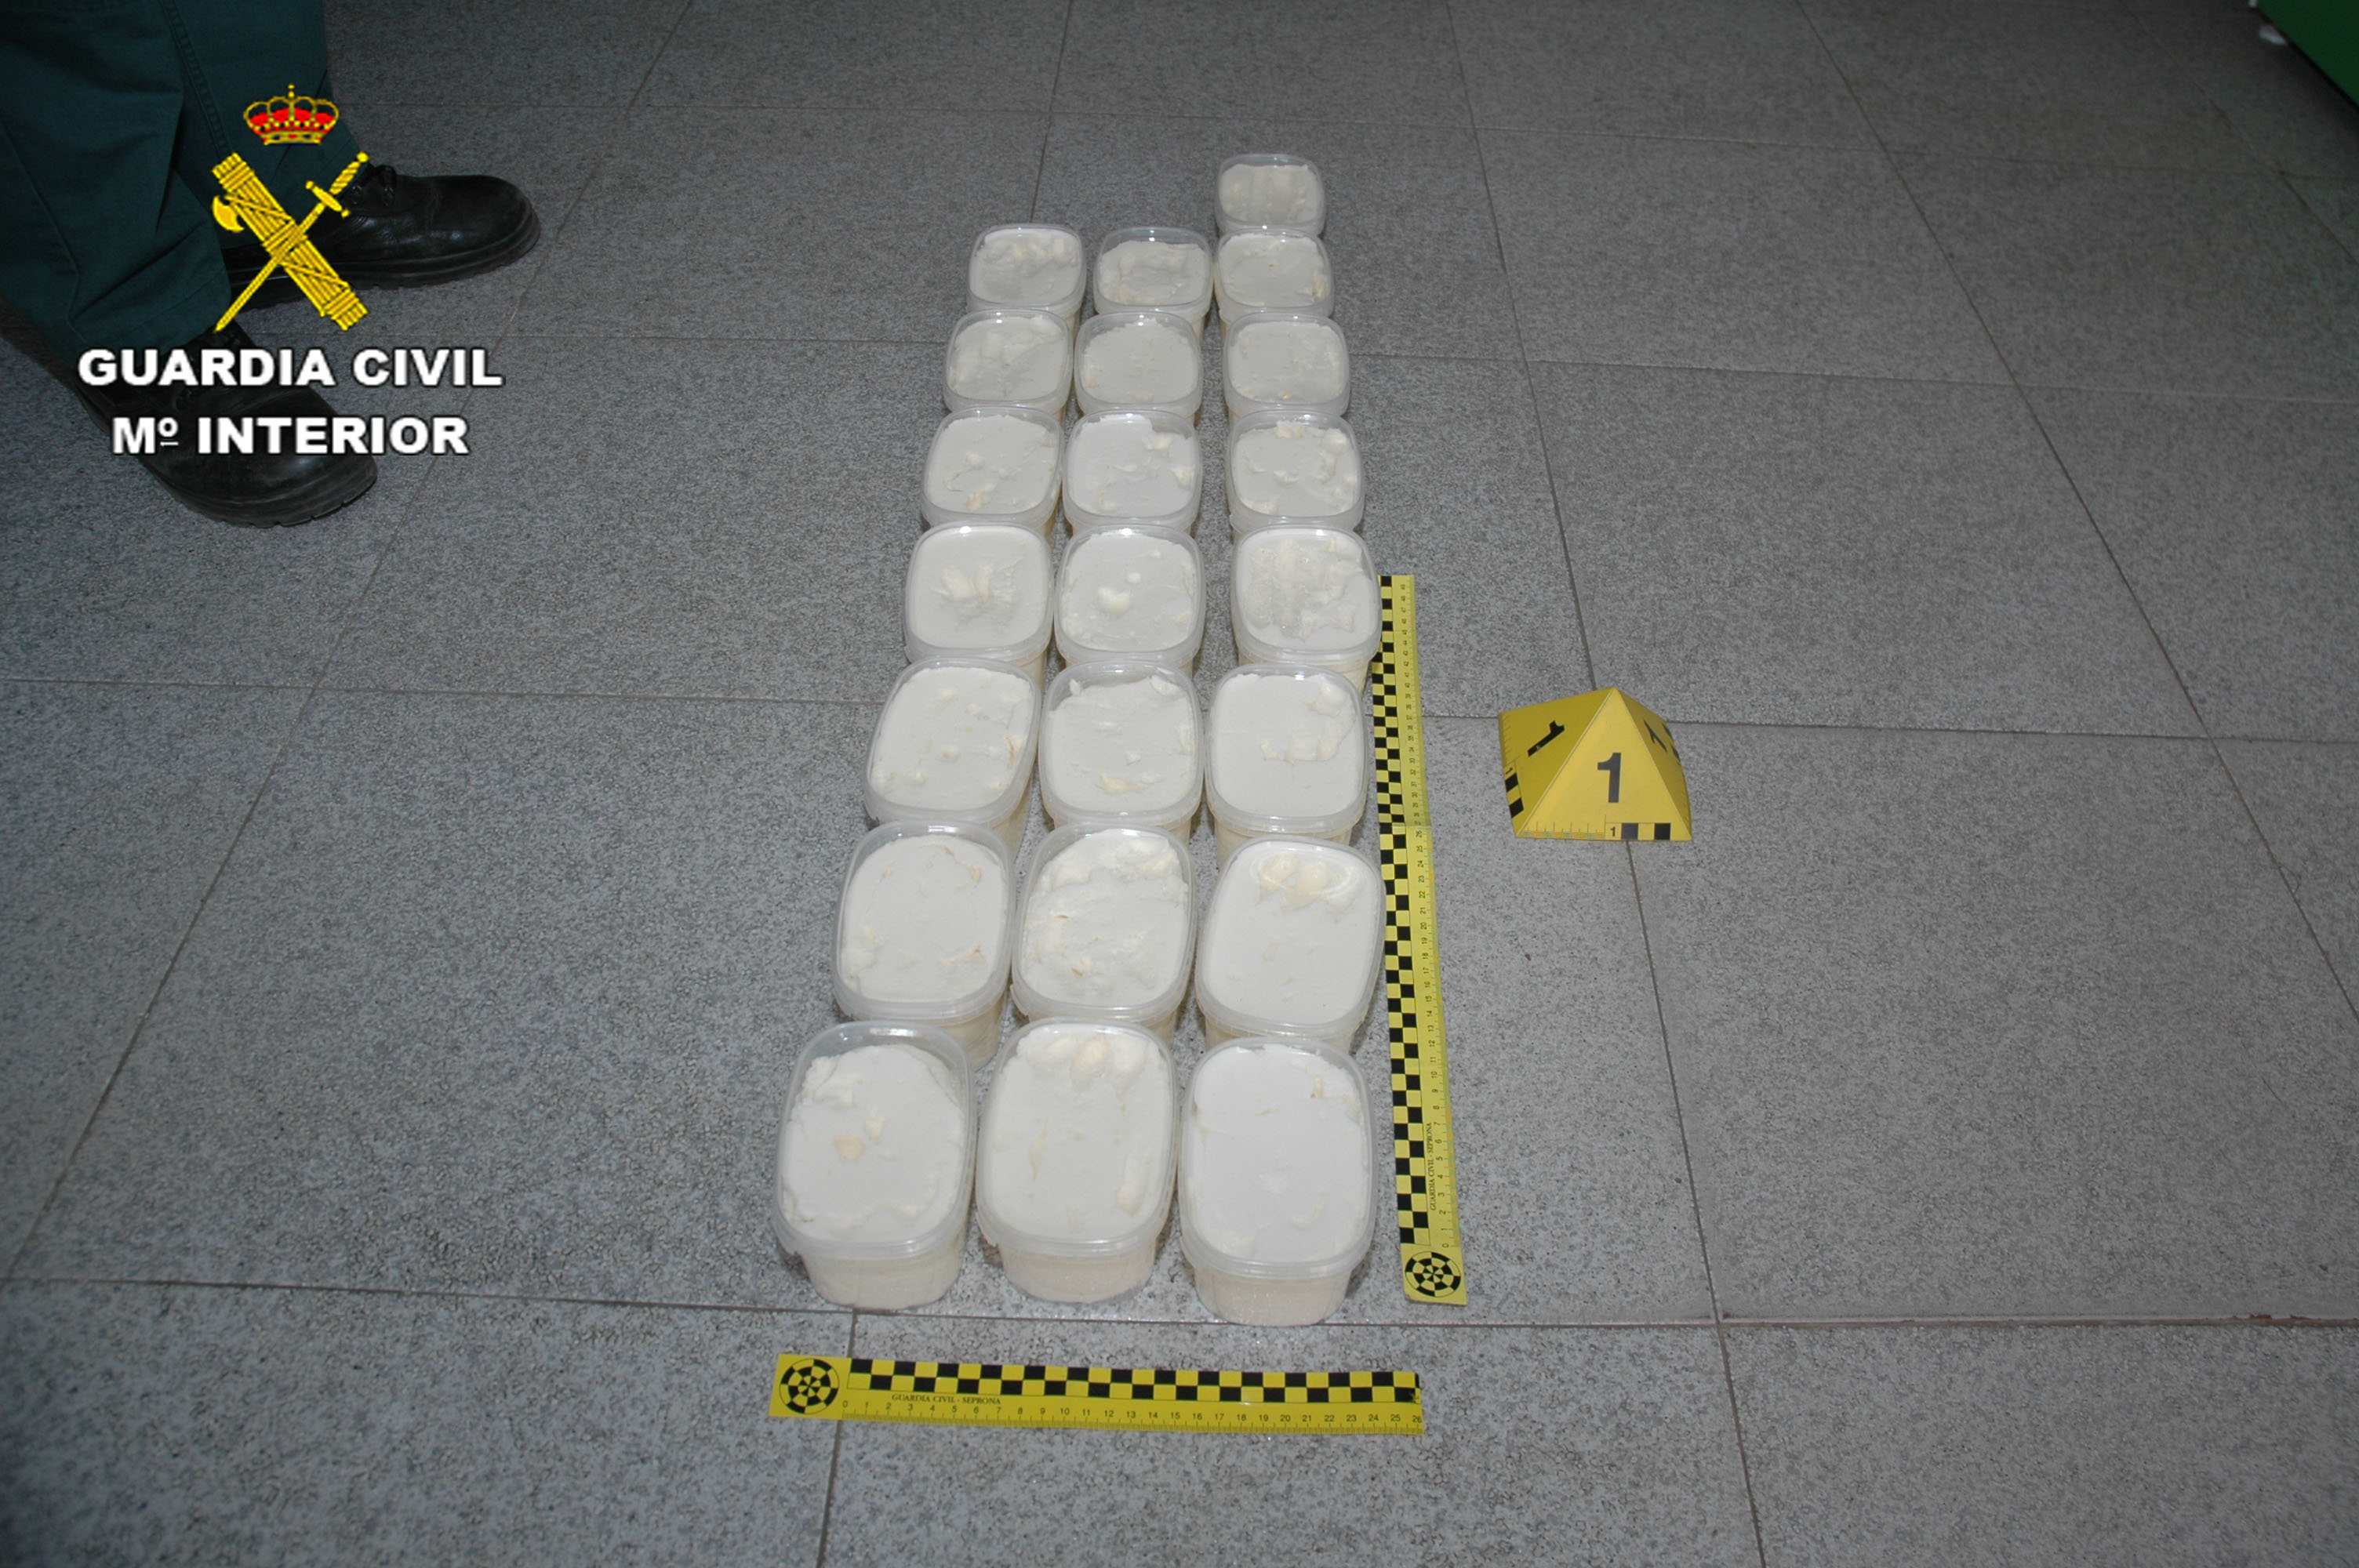 Investigados tras encontrar 22 tarrinas con un producto blanco y pastoso en un establecimiento conquense